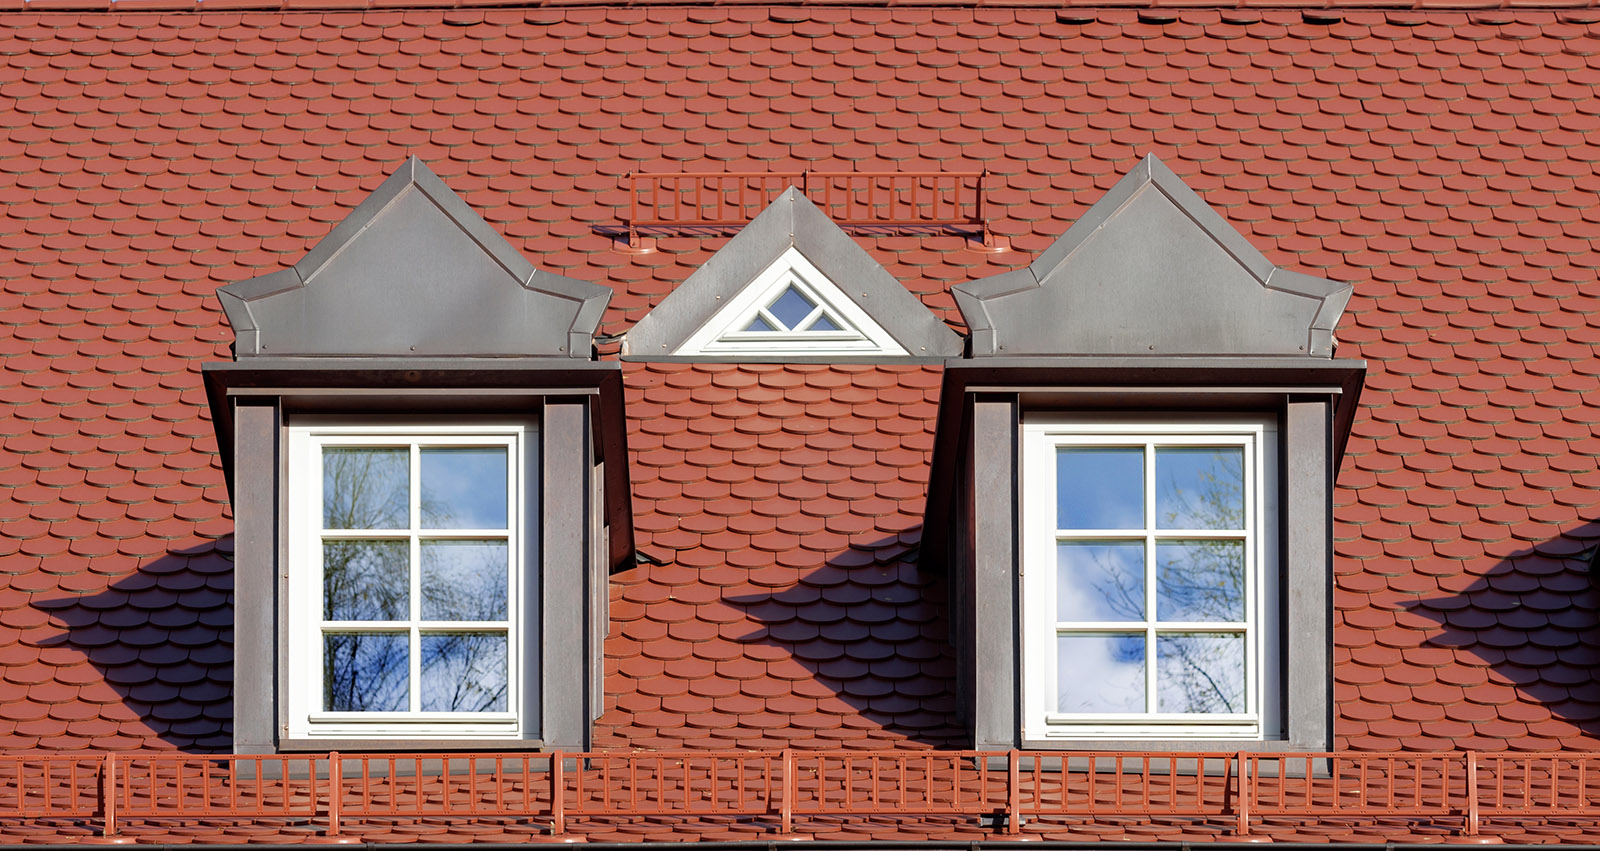 Architekturfotografie Fotograf Studio Oberfranken zwei historische dachgaben die rekonstruiert wurden.